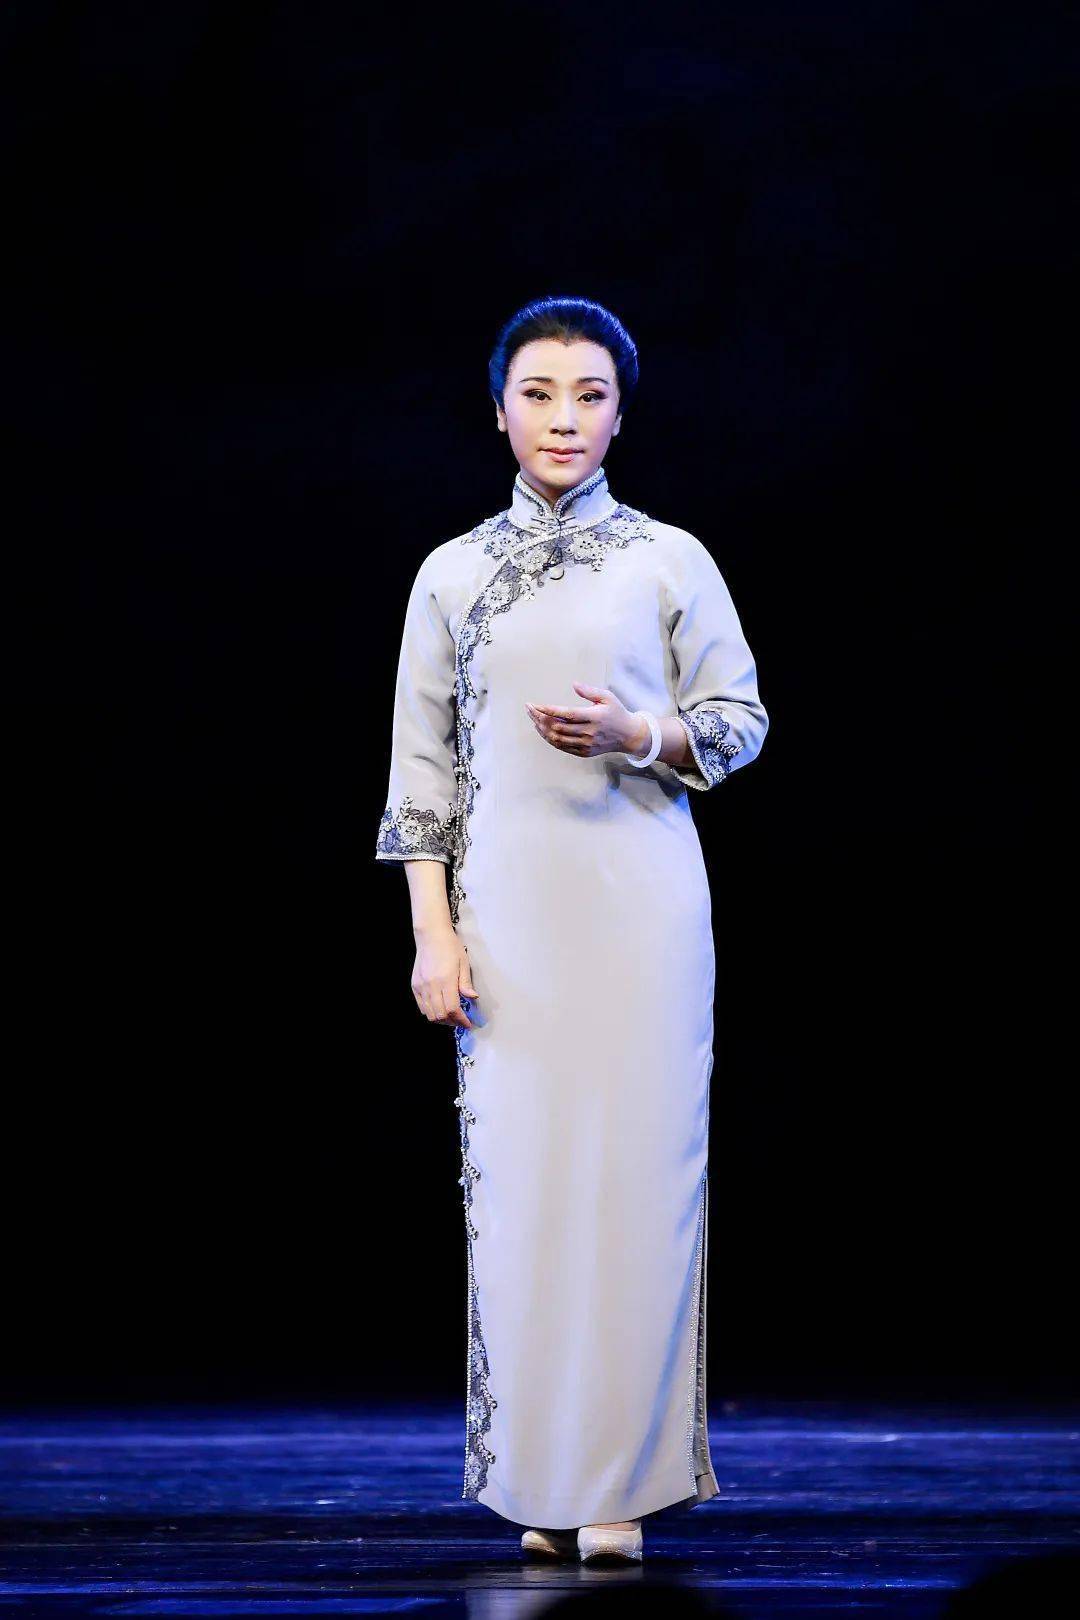 《宋家姐妹》集结了北京京剧院的明星阵容,著名程派青衣迟小秋出演